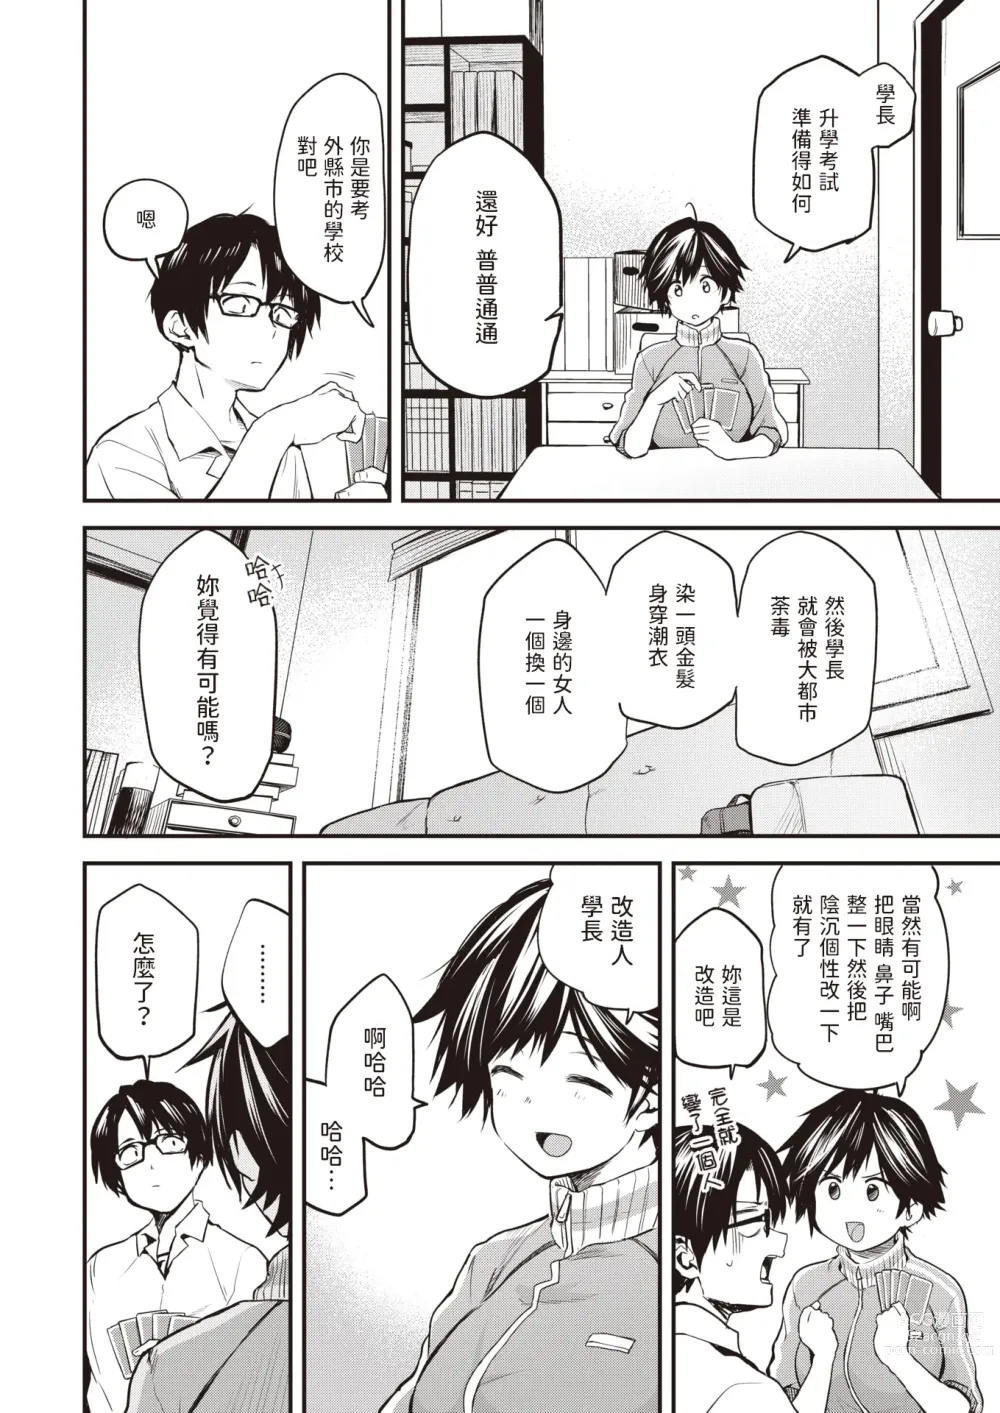 Page 2 of manga Saigo no Bushitsu